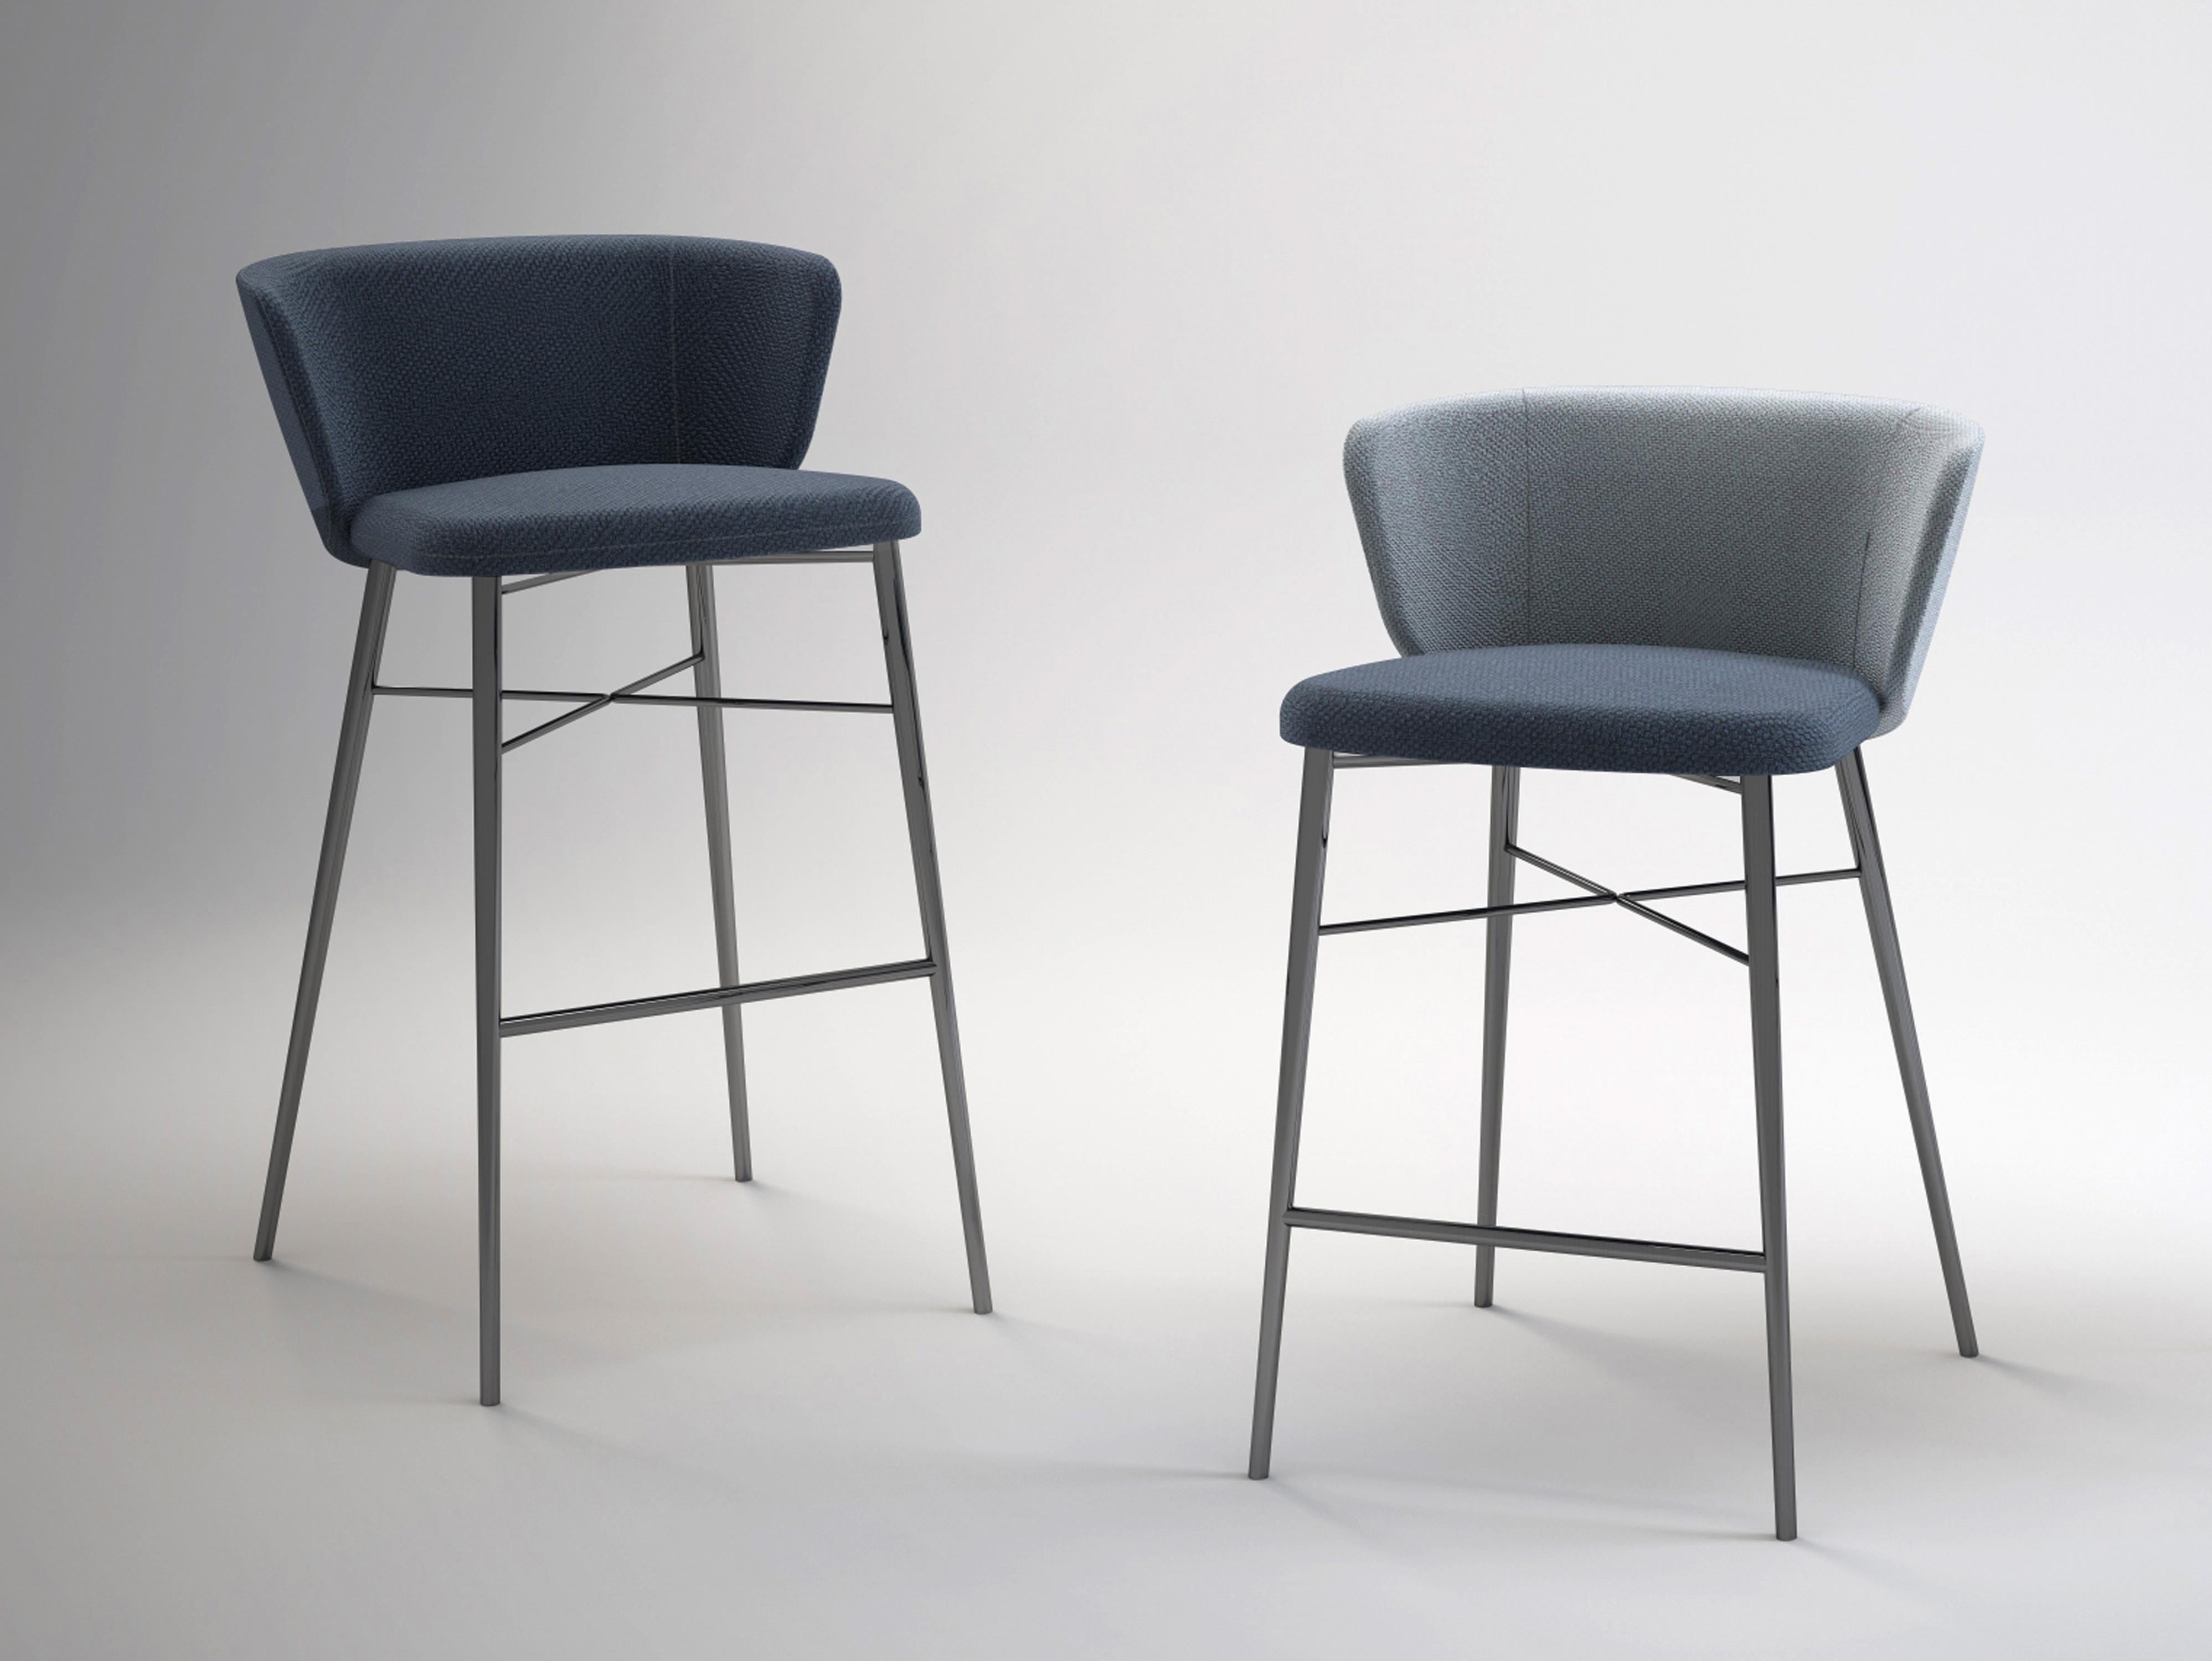 Der Kin-Stuhl ist von der japanischen Kintsugi-Technik inspiriert, die dazu neigt, den Wert von Brüchen zu schätzen, anstatt sie zu verbergen. In Anlehnung an die japanische Tradition haben die Designer Radice und Orlandini die verschiedenen Teile